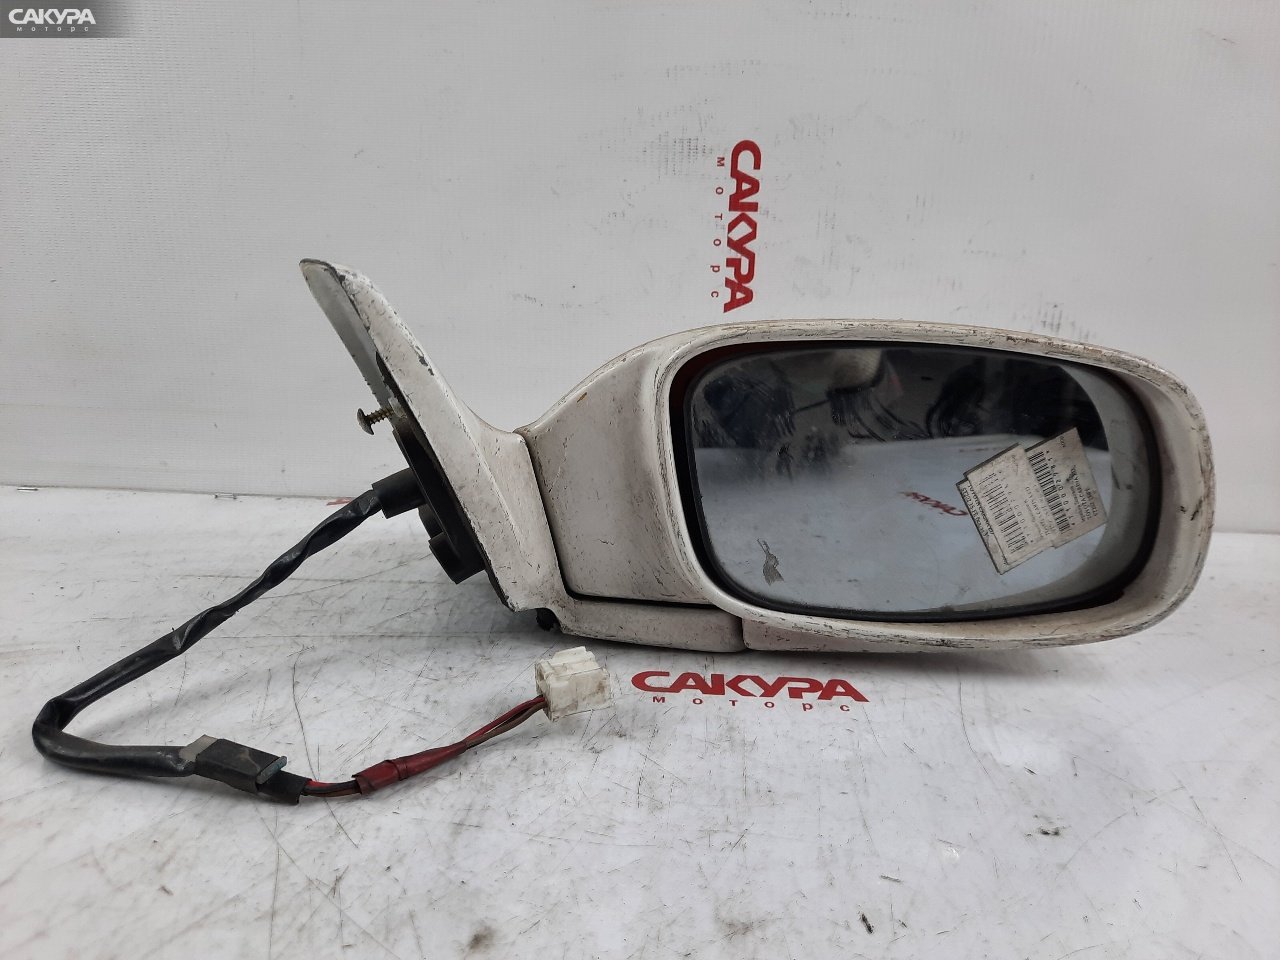 Зеркало боковое правое Toyota Carina ED ST200 4S-FE: купить в Сакура Красноярск.